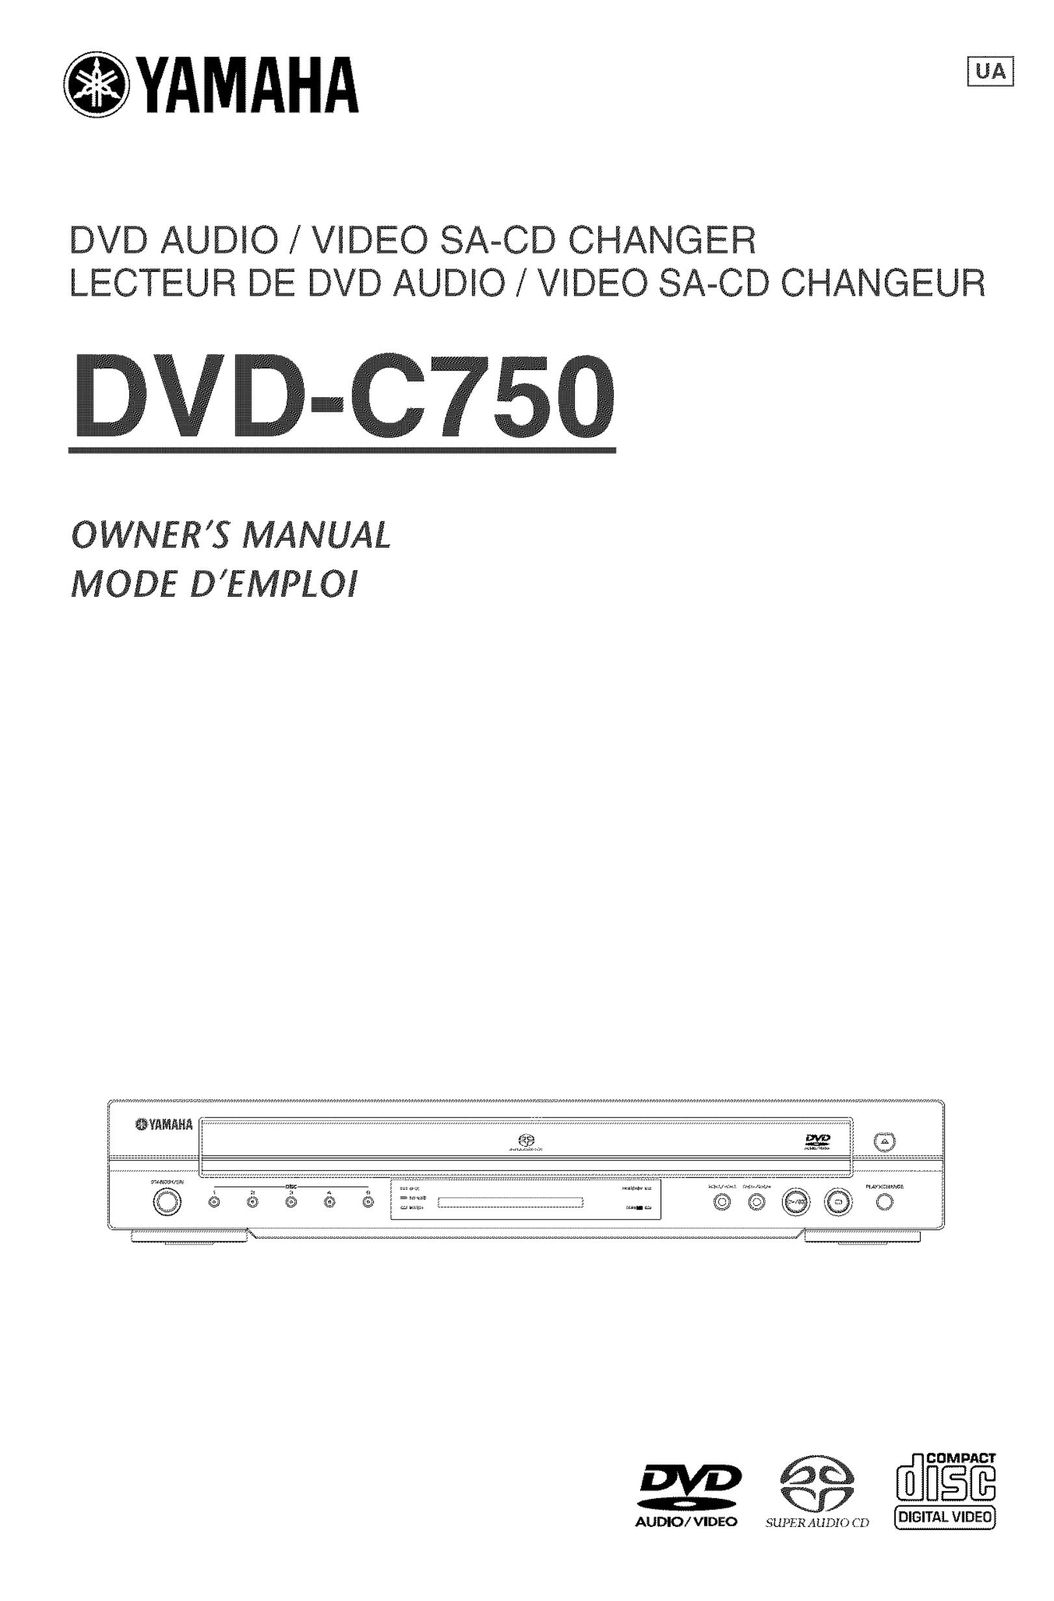 Yamaha DVD-C750 DVD Player User Manual